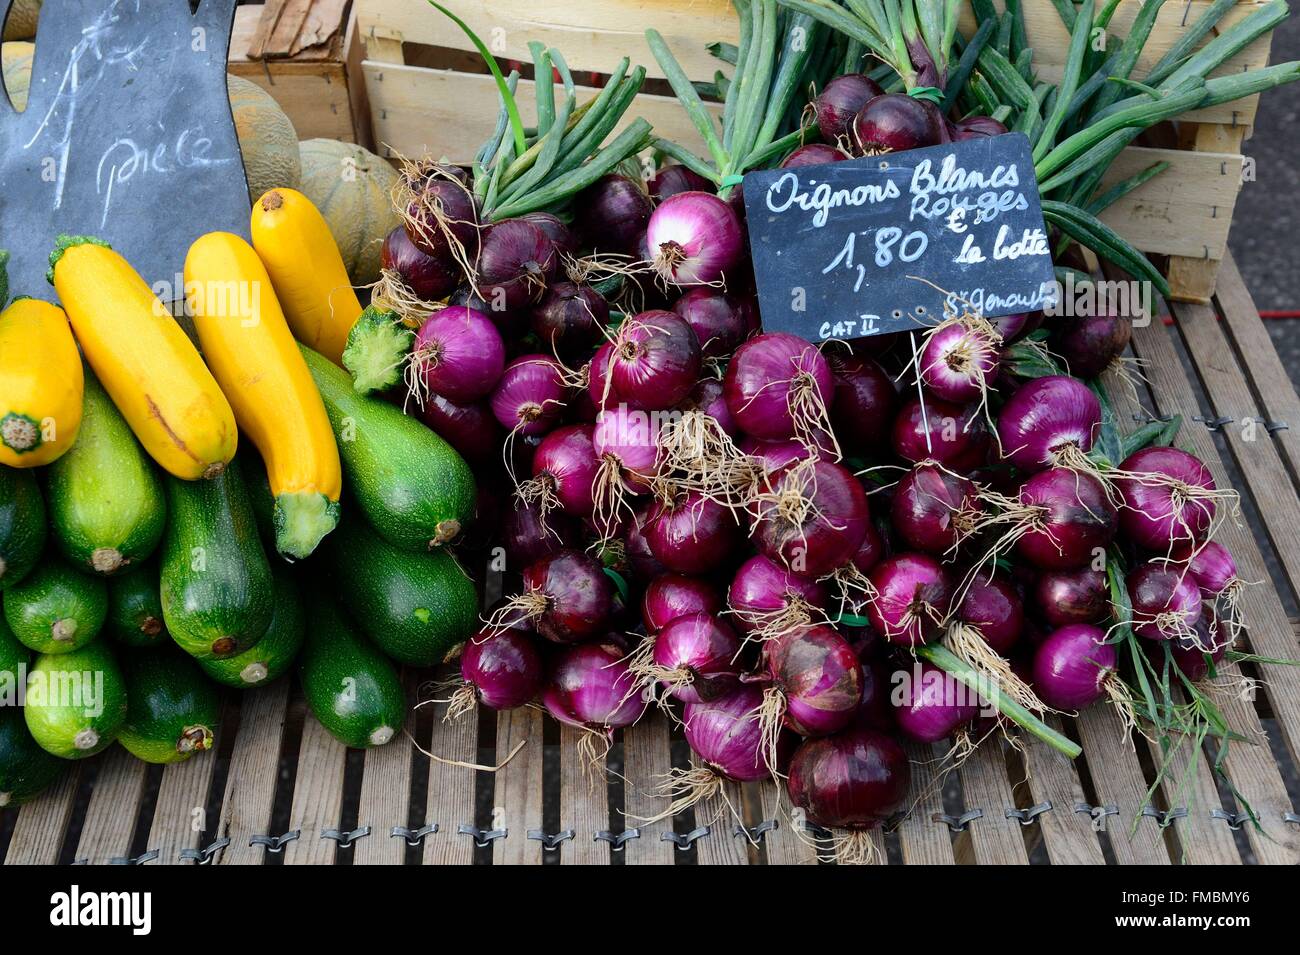 France, Indre et Loire, Tours, Halles market, onions Stock Photo